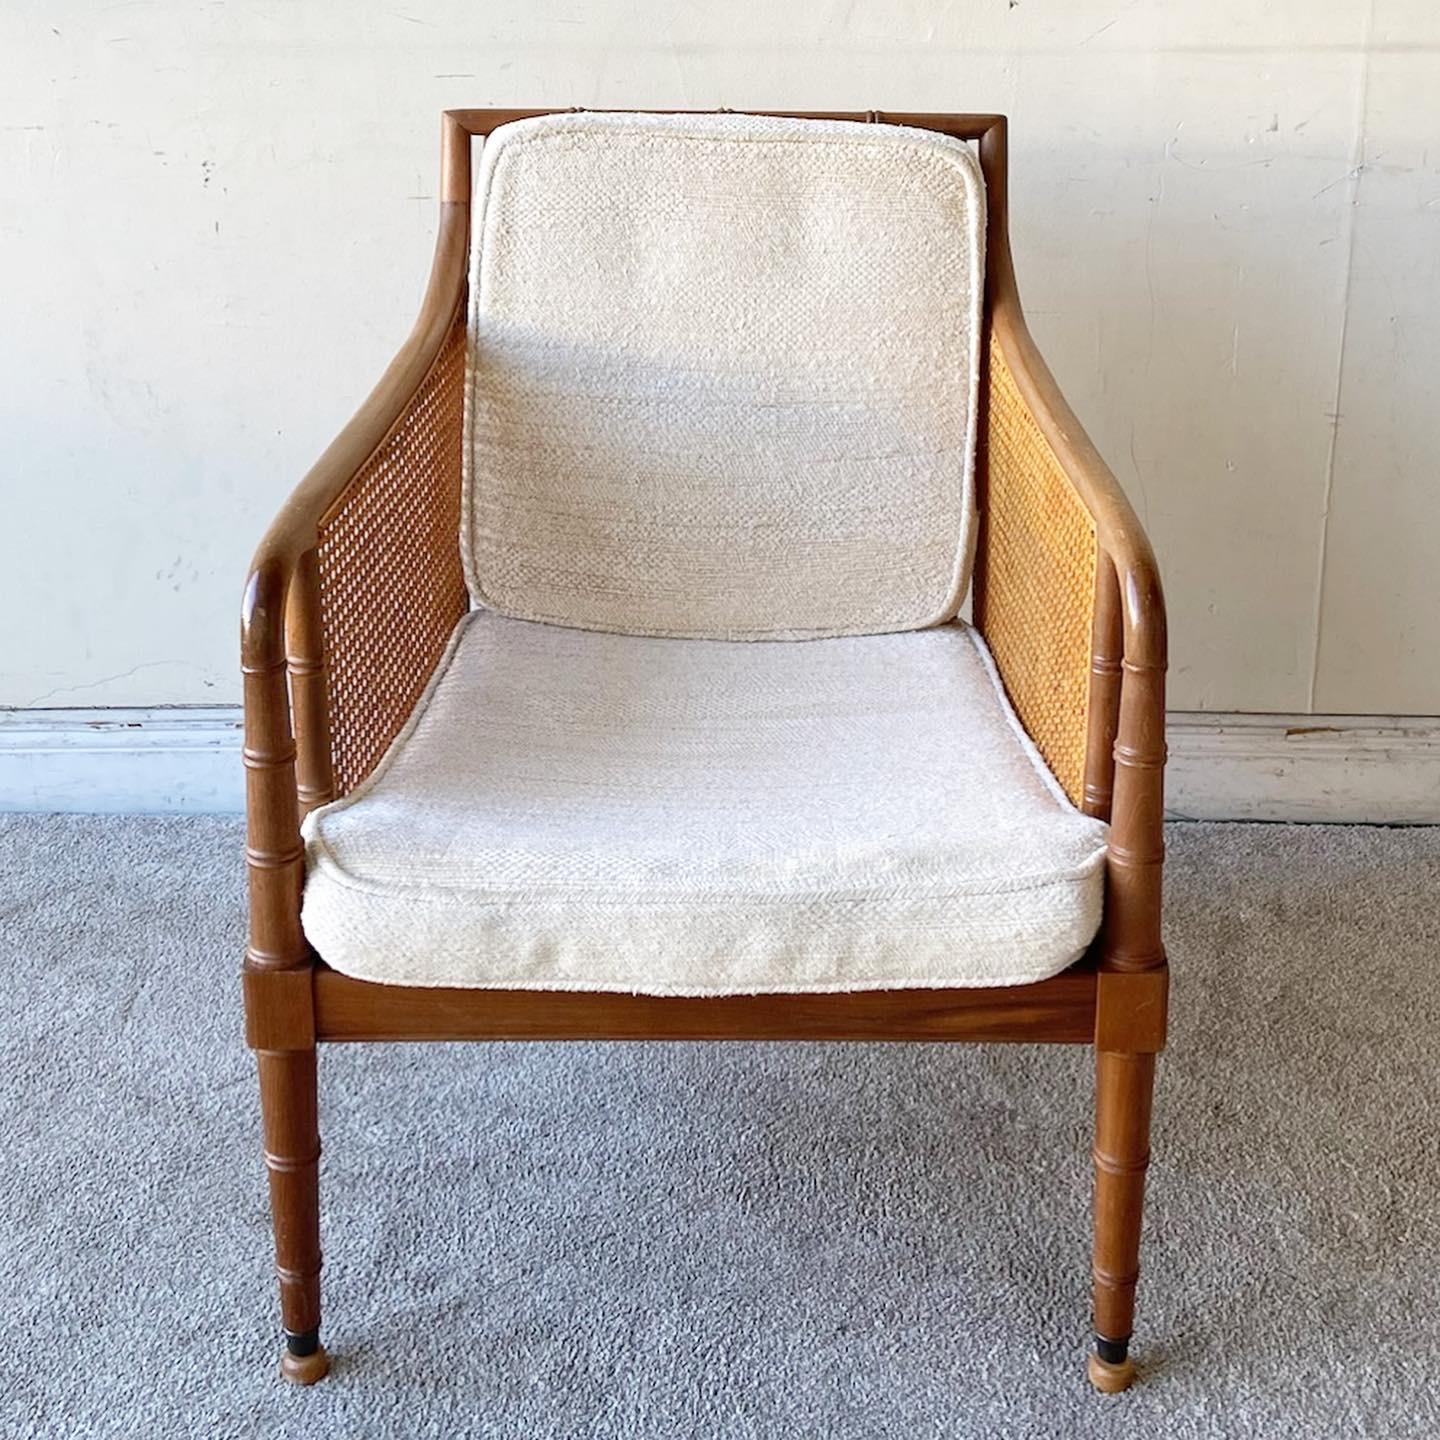 Exceptionnel fauteuil vintage en faux bambou. Comprend des côtés et un dossier en canette avec deux coussins blancs.
